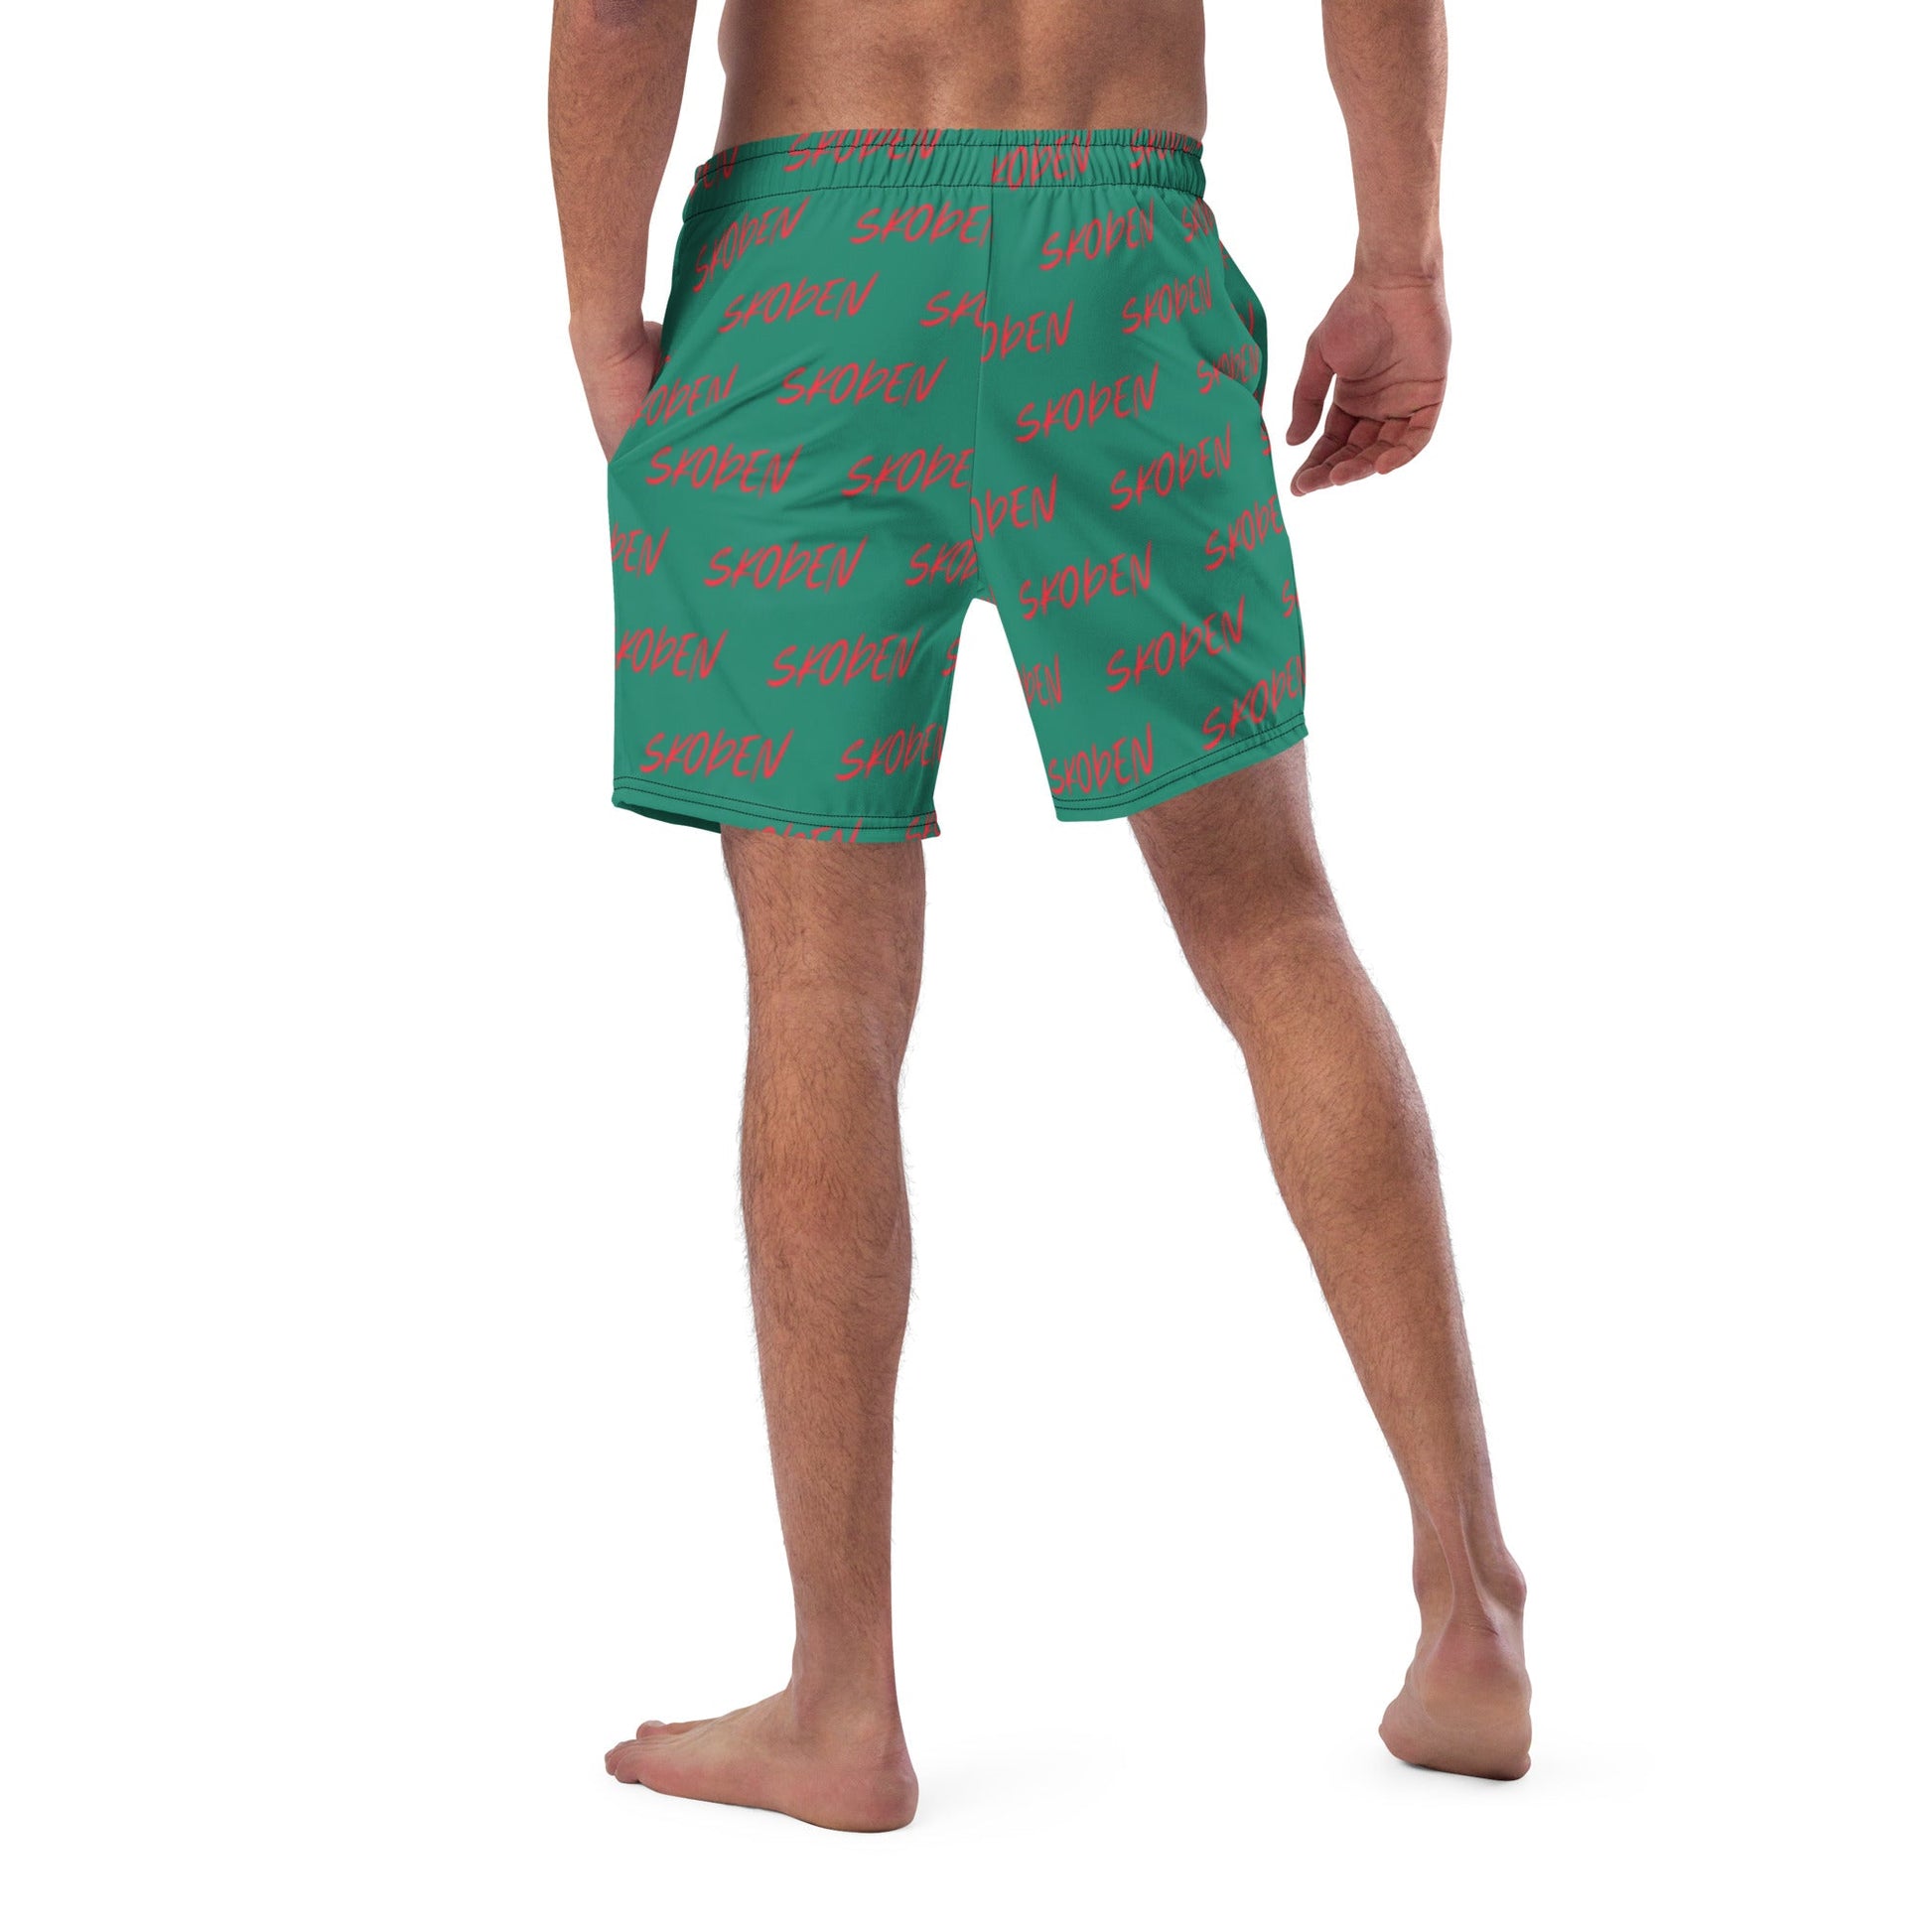 Men's swim trunks Men's swim trunks Native Recycled Material Skoden Green - Nikikw Designs